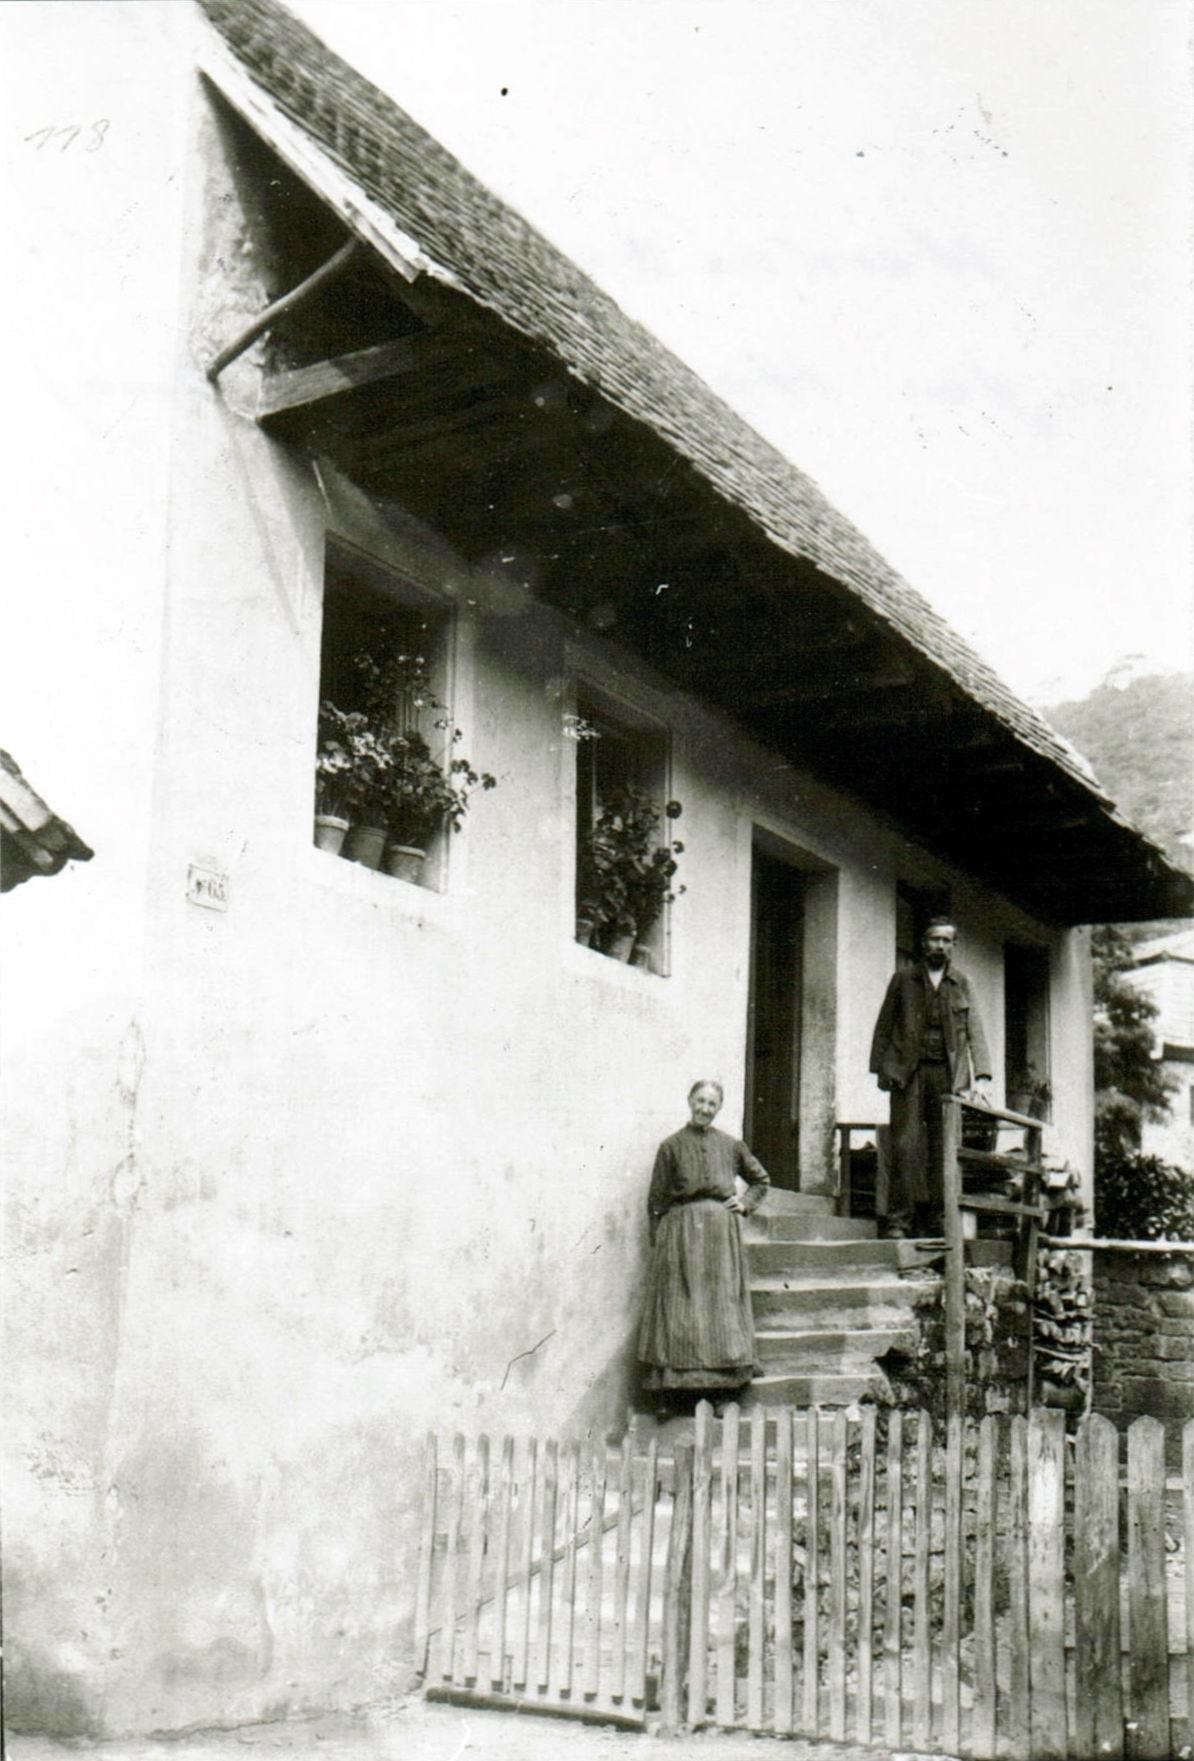 Foto-Sammlung Adolf Krapp, Ordner 2: Hardenburg, 1912 (Museumsgesellschaft Bad Dürkheim e.V. CC BY-NC-SA)